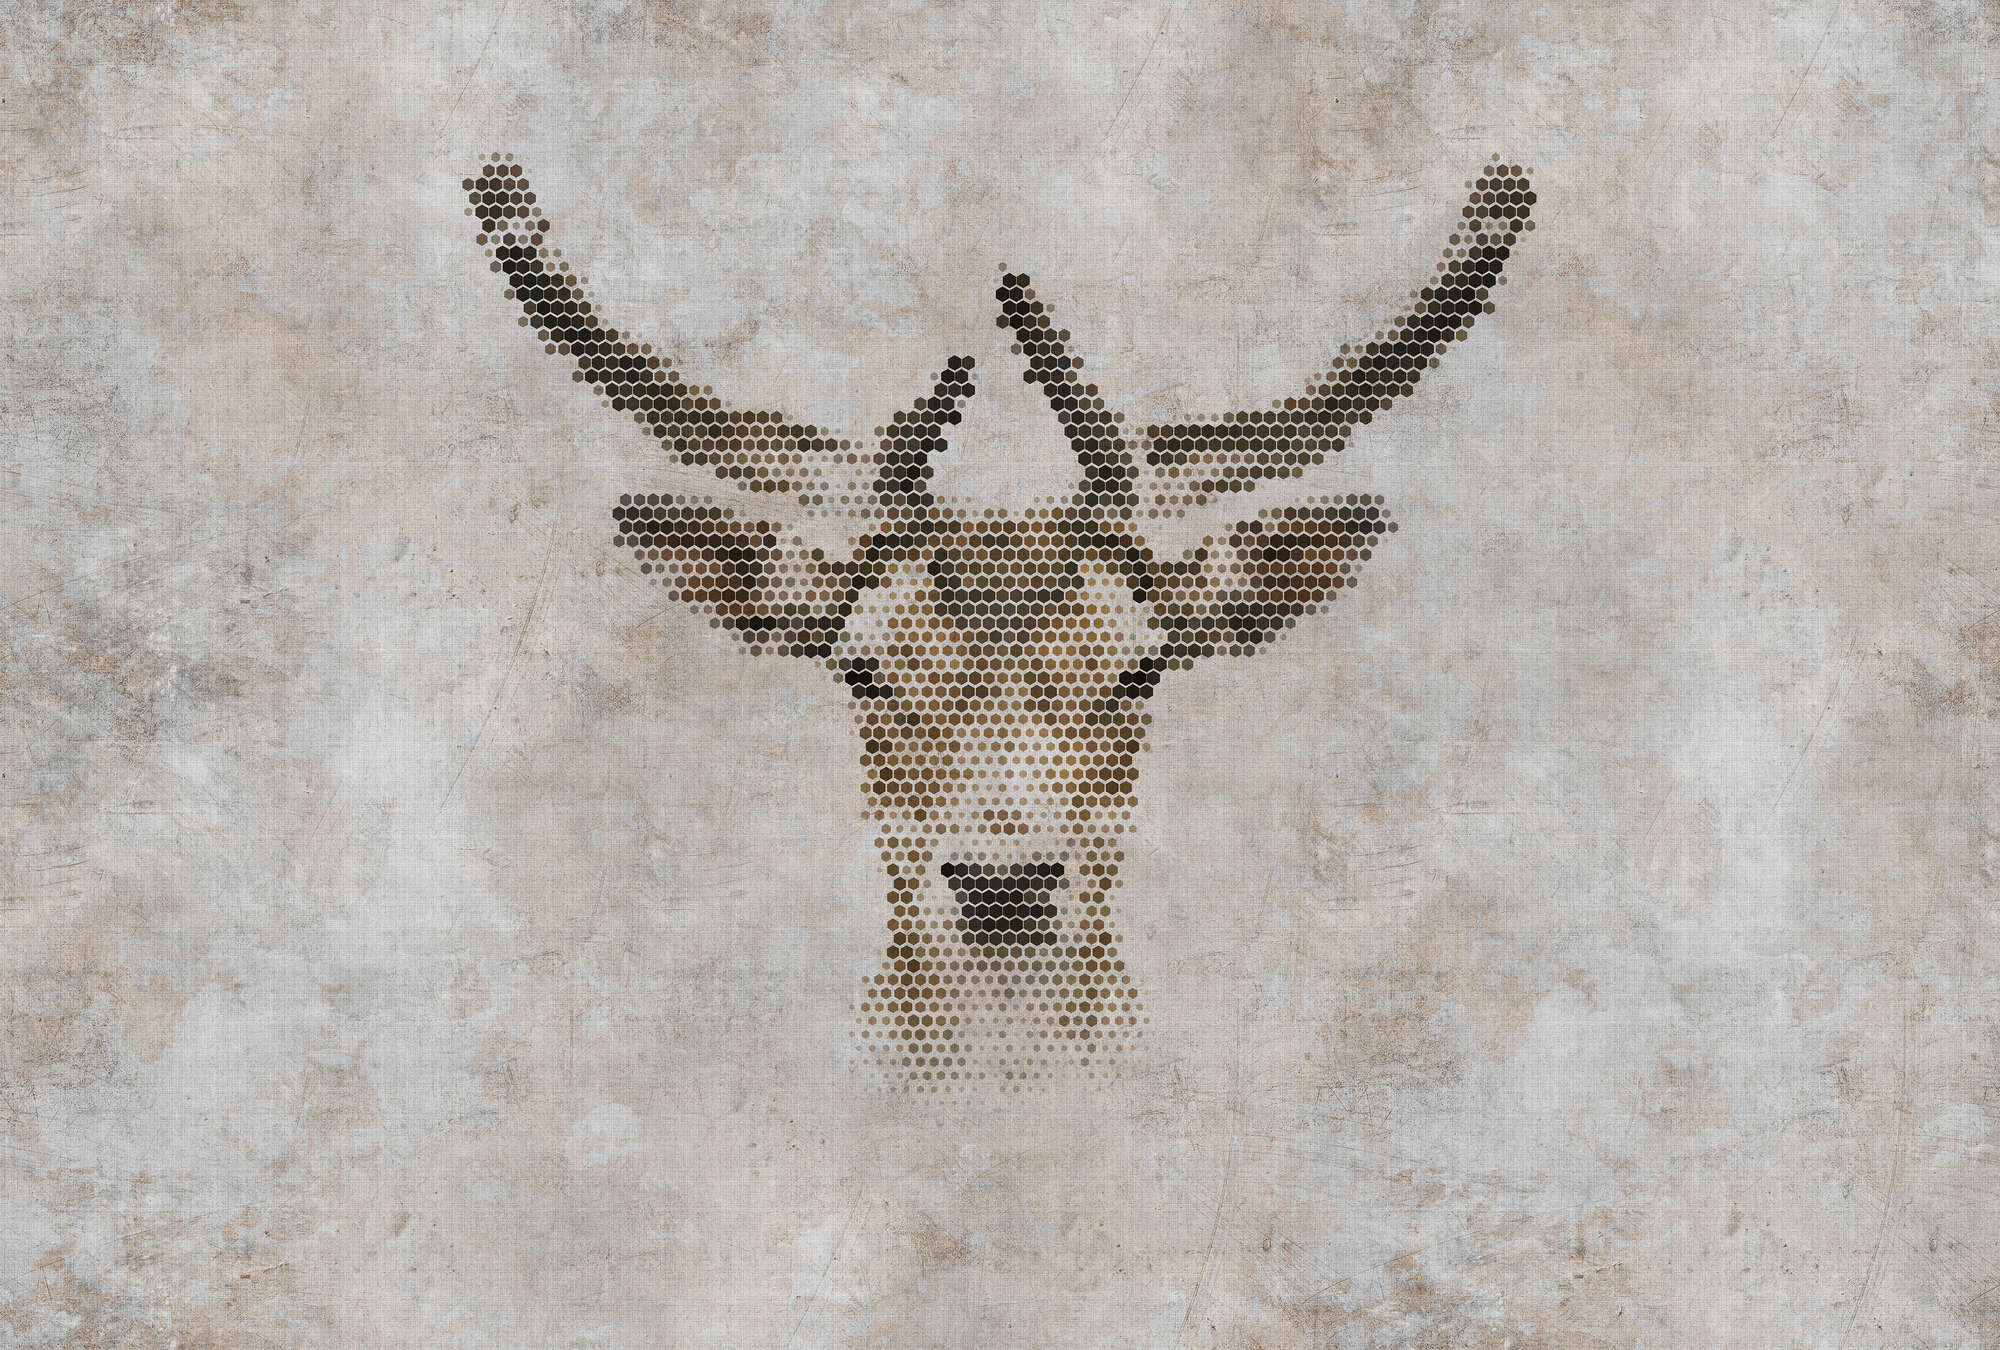             Big three 3 - digital print wallpaper, concrete look with deer in natural linen structure - beige, brown | matt smooth fleece
        